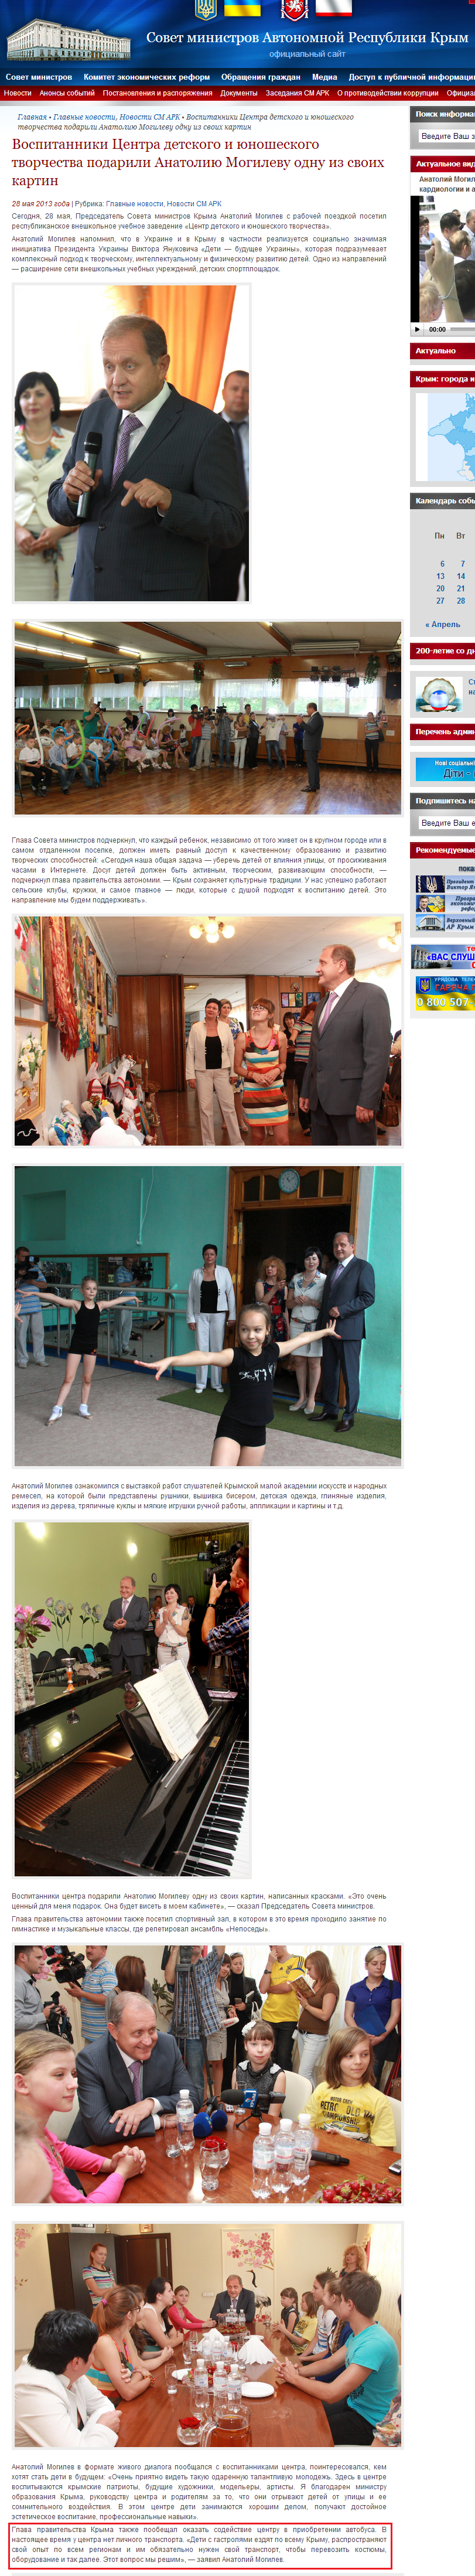 http://www.ark.gov.ua/blog/2013/05/28/vospitanniki-centra-detskogo-i-yunosheskogo-tvorchestva-podarili-anatoliyu-mogilevu-odnu-iz-svoix-kartin/